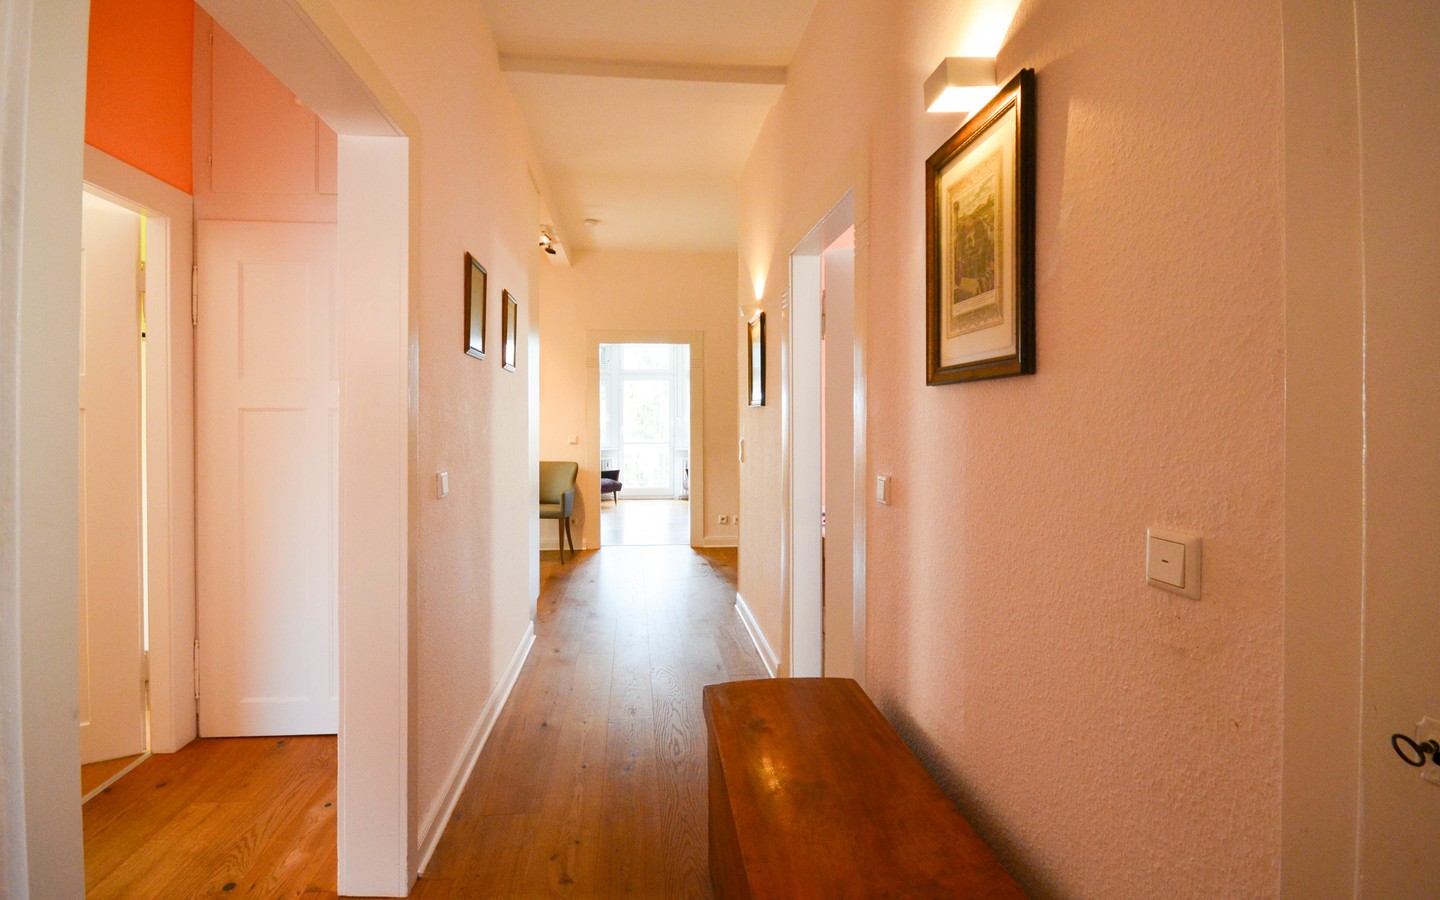 Flur - Traumhaft schöne Fünfzimmerwohnung in Heidelberg-Neuenheim